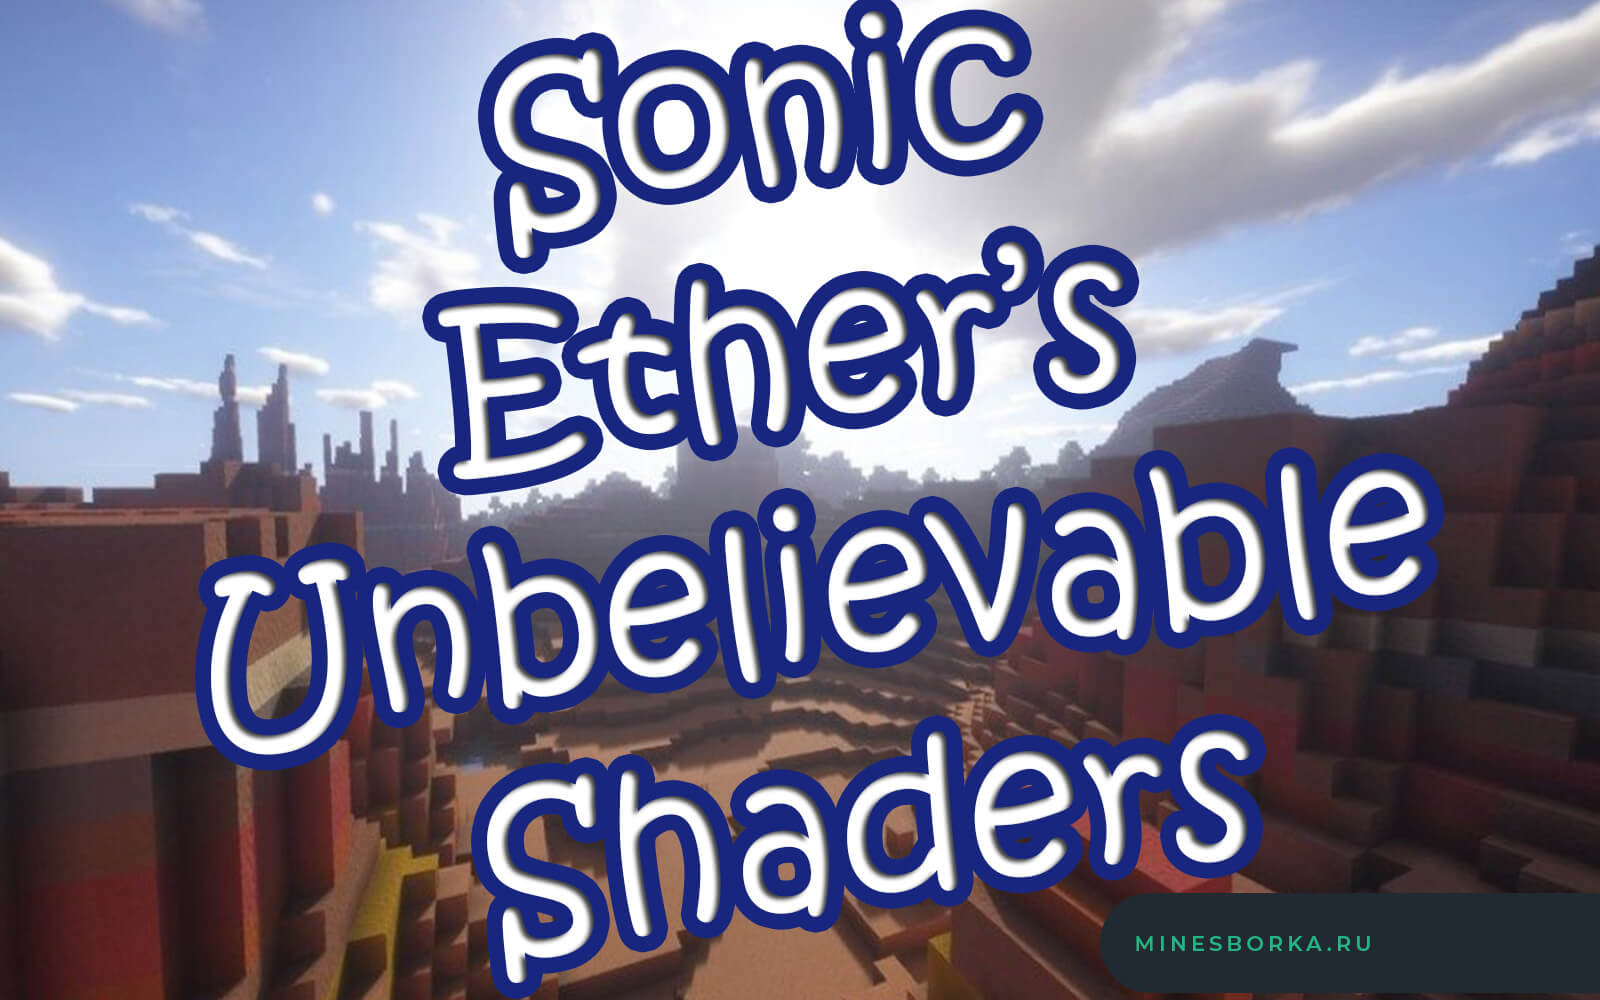 Шейдеры Sonic Ether’s Unbelievable Shaders для майнкрафт | Красивые световые эффекты